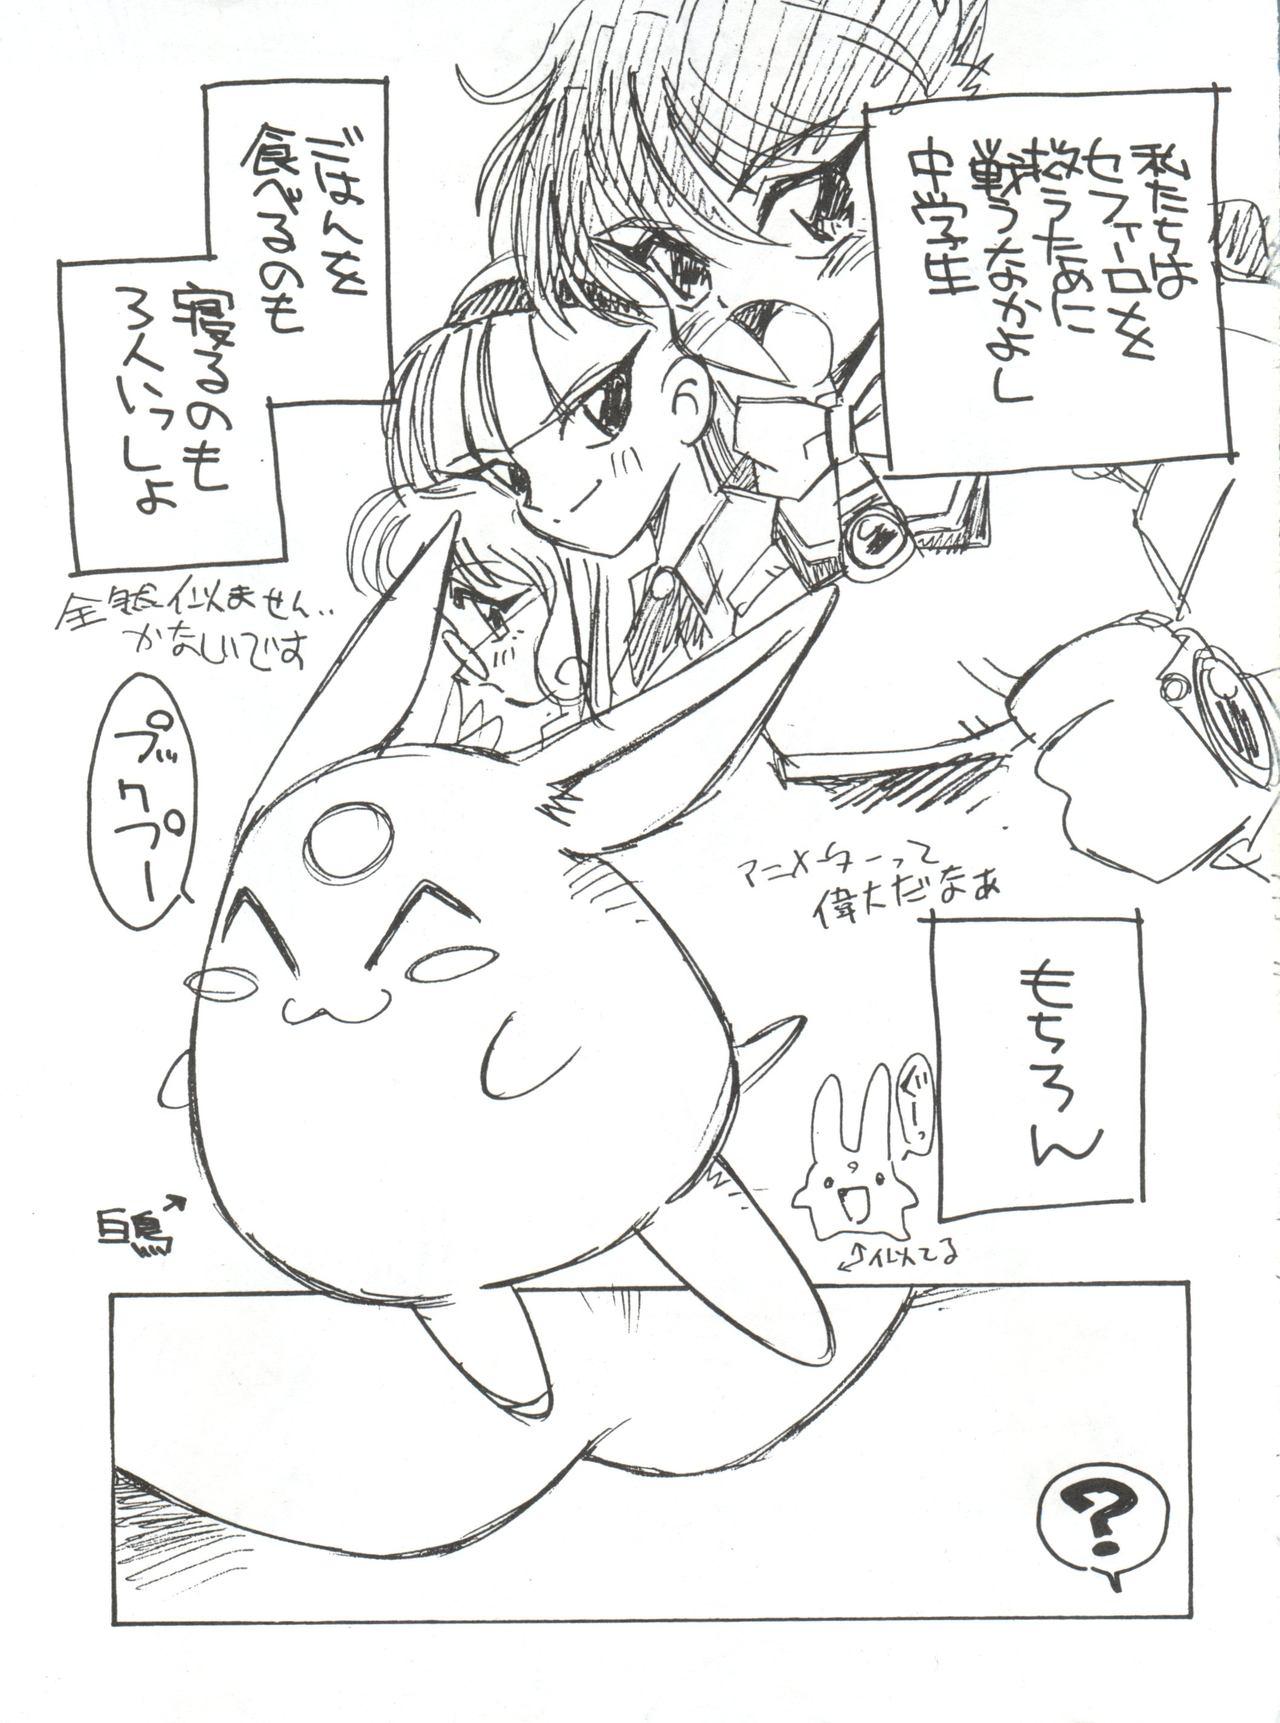 Orgame Zokuzoku Sanbiki ga Kiru! Shiratori wa Seifu no Inu - Magic knight rayearth Secretary - Page 5